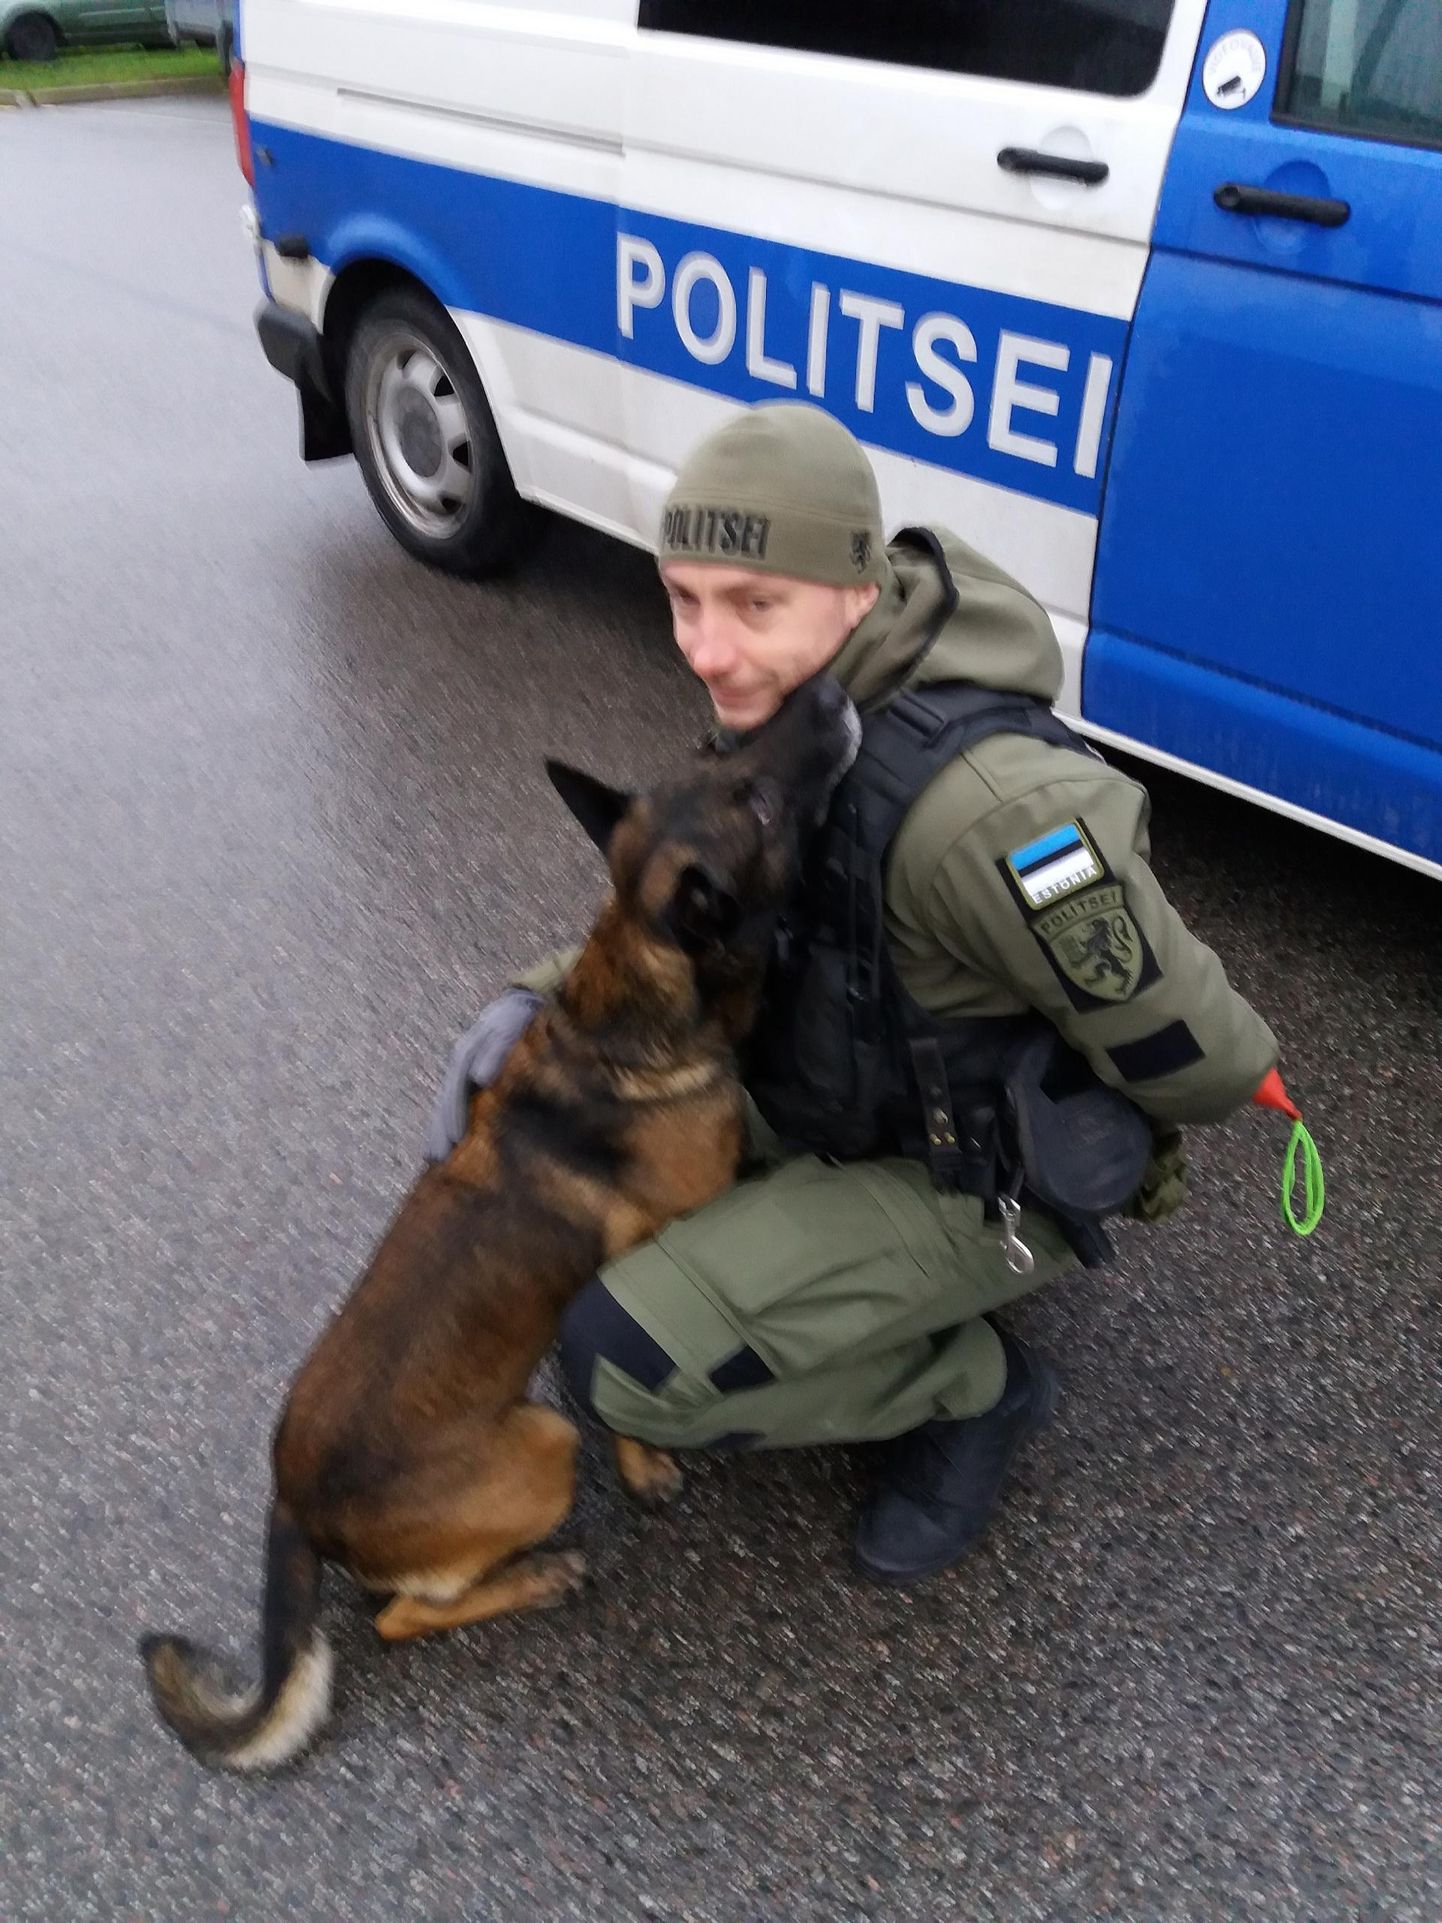 Politsei- ja piirivalveameti parim koerajuht Tõnu Kohver ja tema neljajalgne partner Uljas pärast käsklust “Kalli!”.